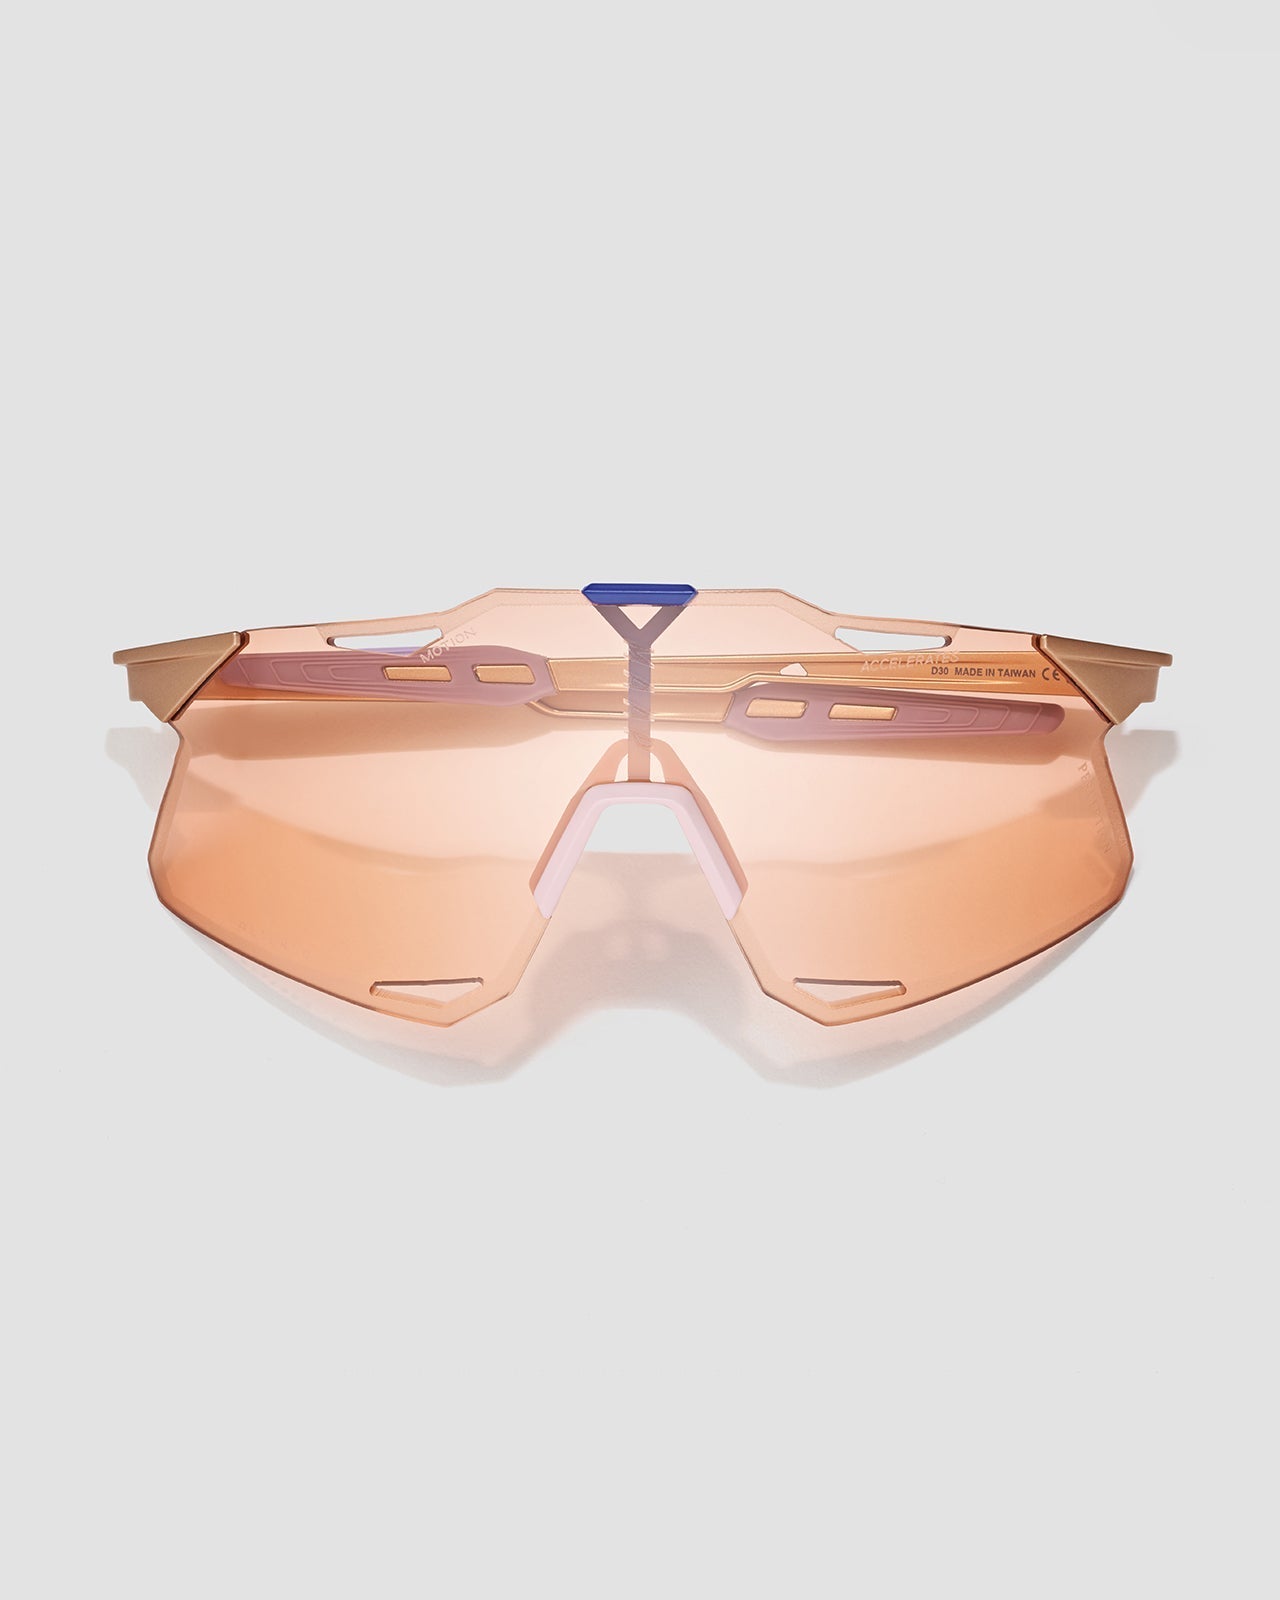 MAAP x 100% Hypercraft Sunglasses - Copper